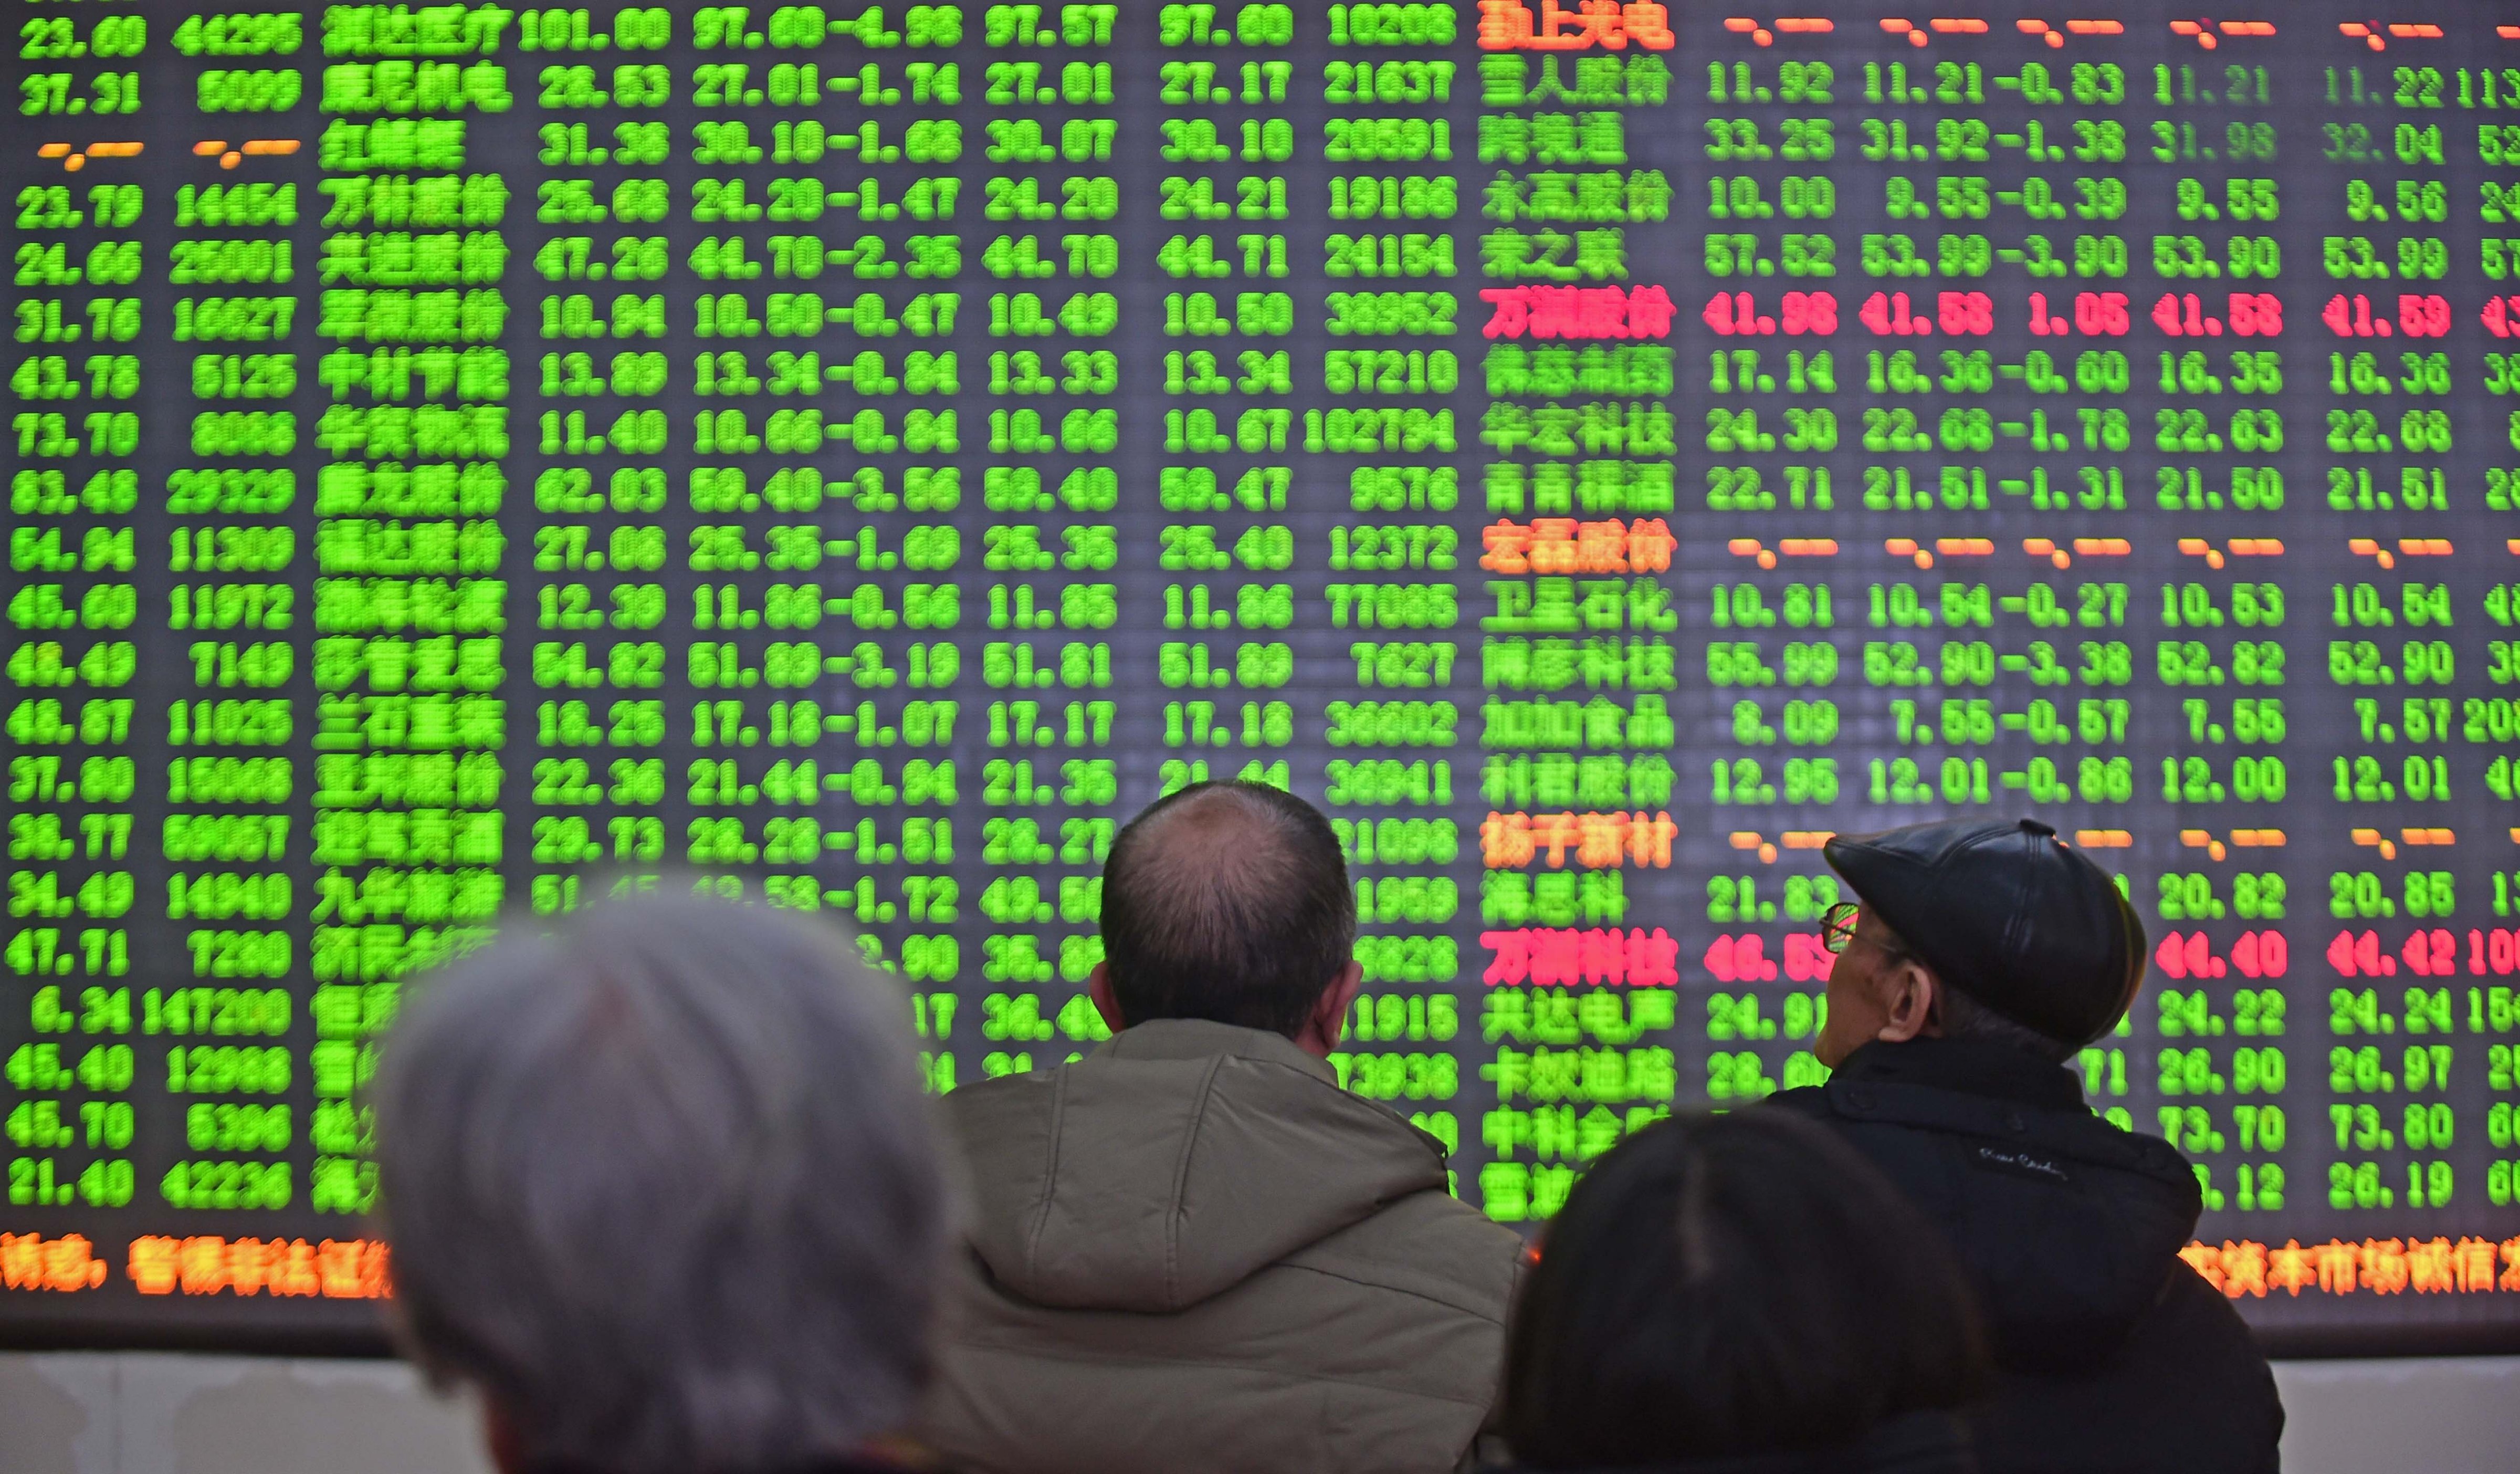 Investors look through stock information at a trading hall in Shenyang, China on Jan. 4, 2016. (Yang Qing—Xinhua Press/Corbis)